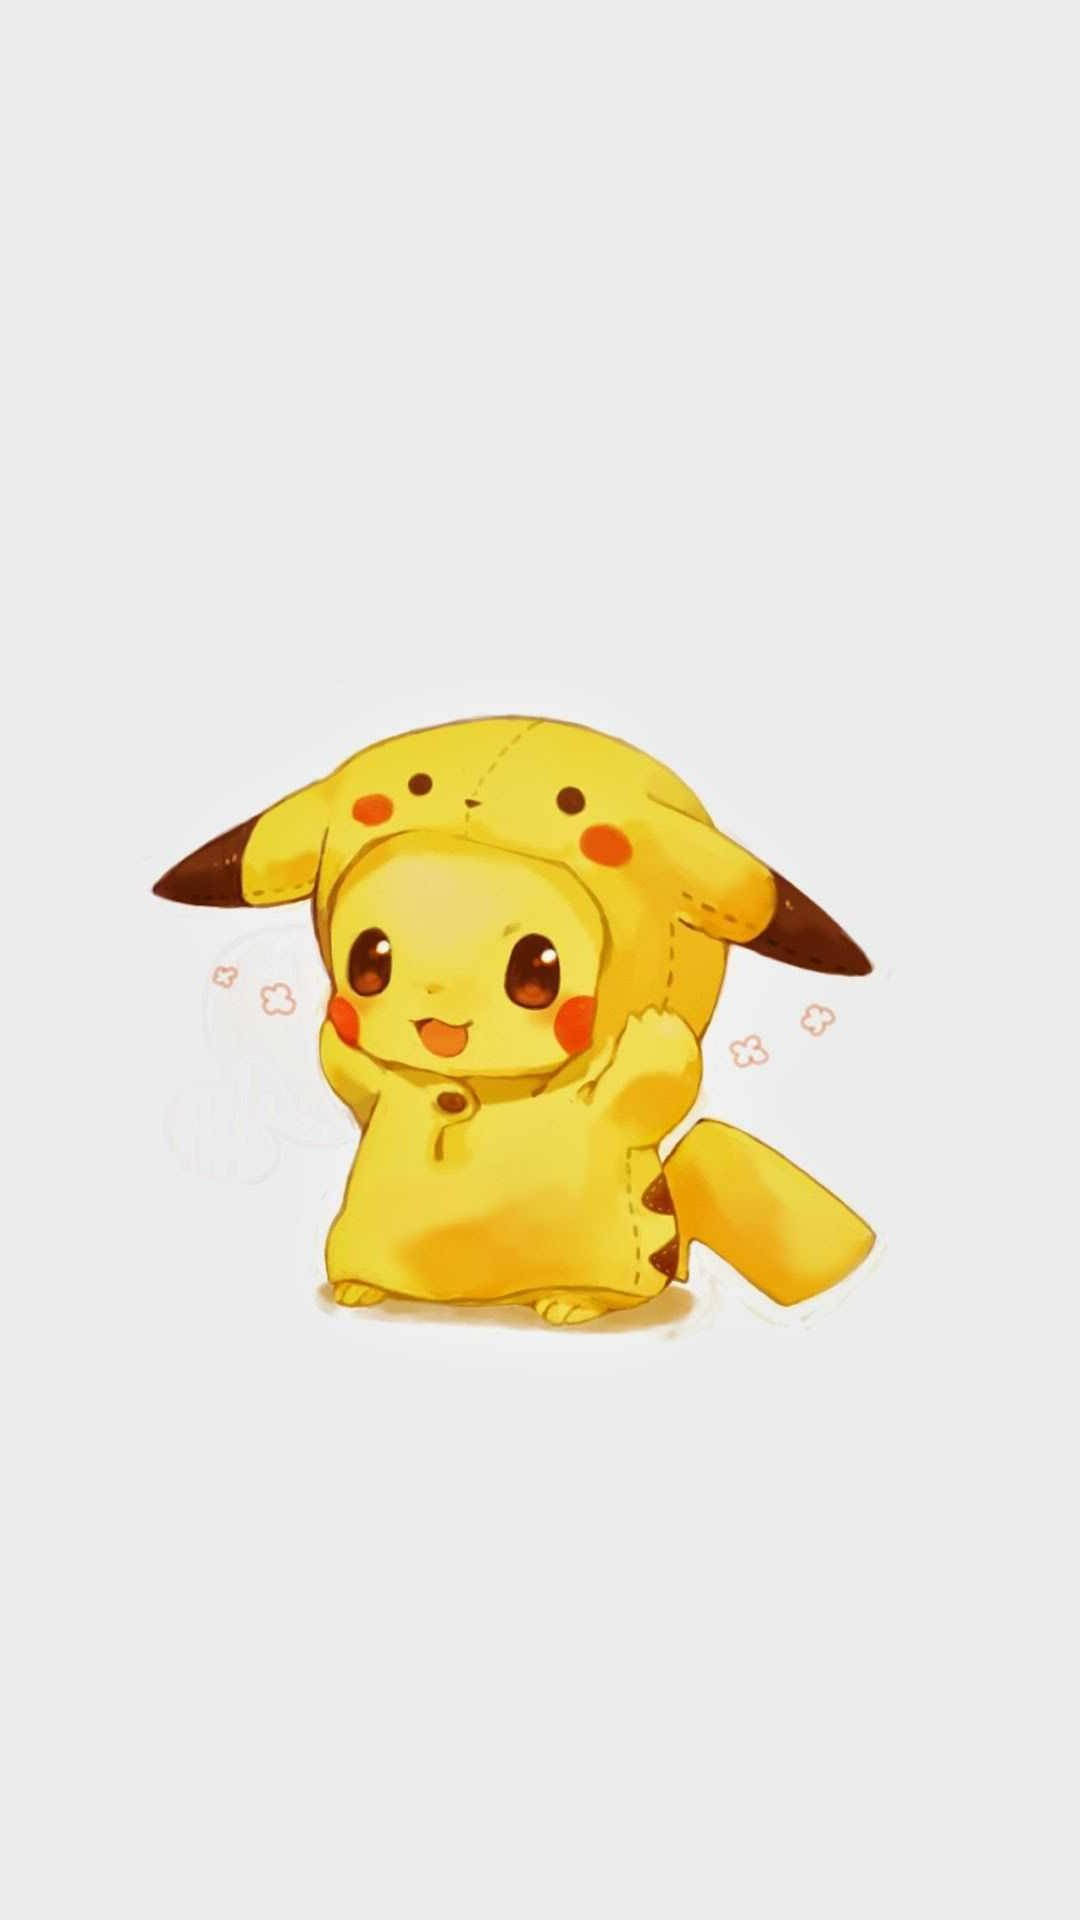 Pikachu Cute Chibi Wallpapers